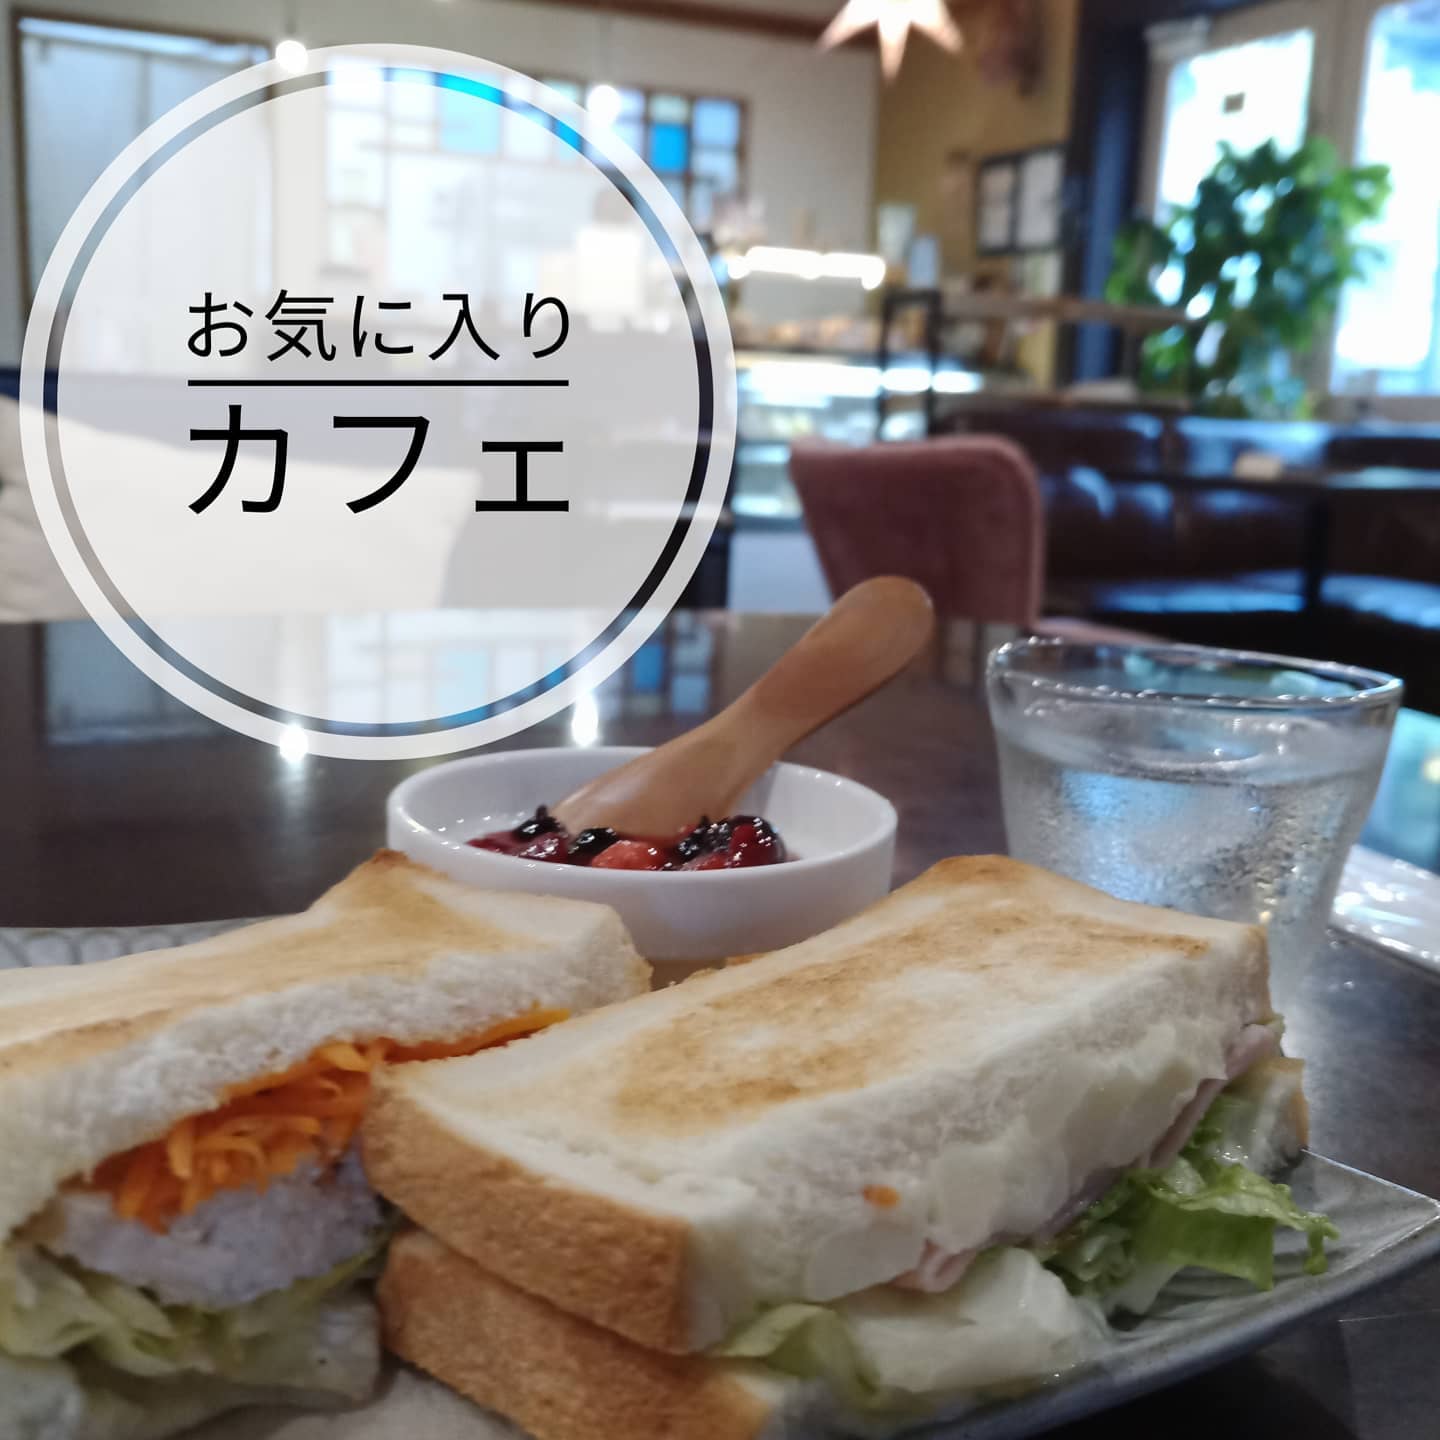 【Cafeタイム】来週から、桑折町9月定例会が始まります。お気に入りのCafeで、しっかり準備します!